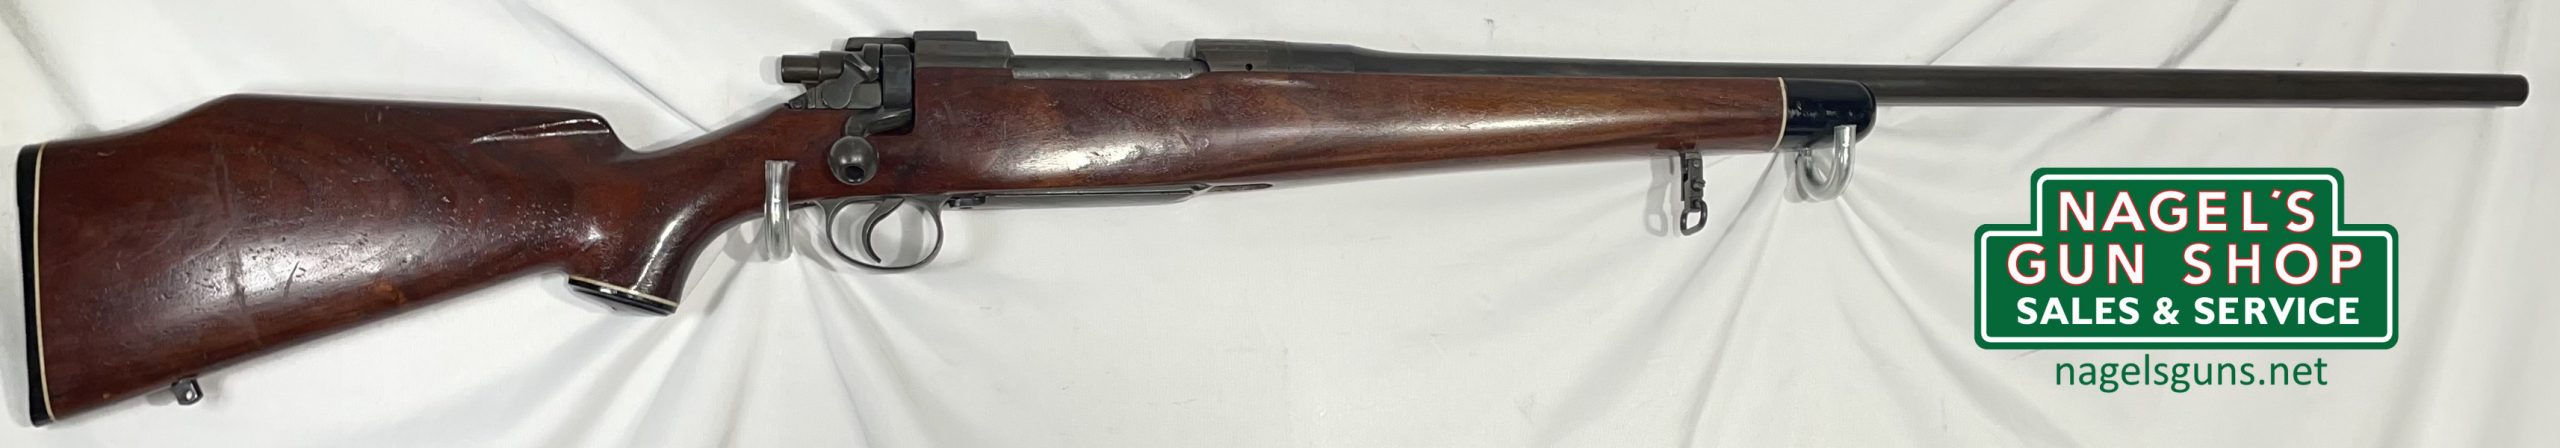 Enfield 1917 Eddystone 303 British Rifle